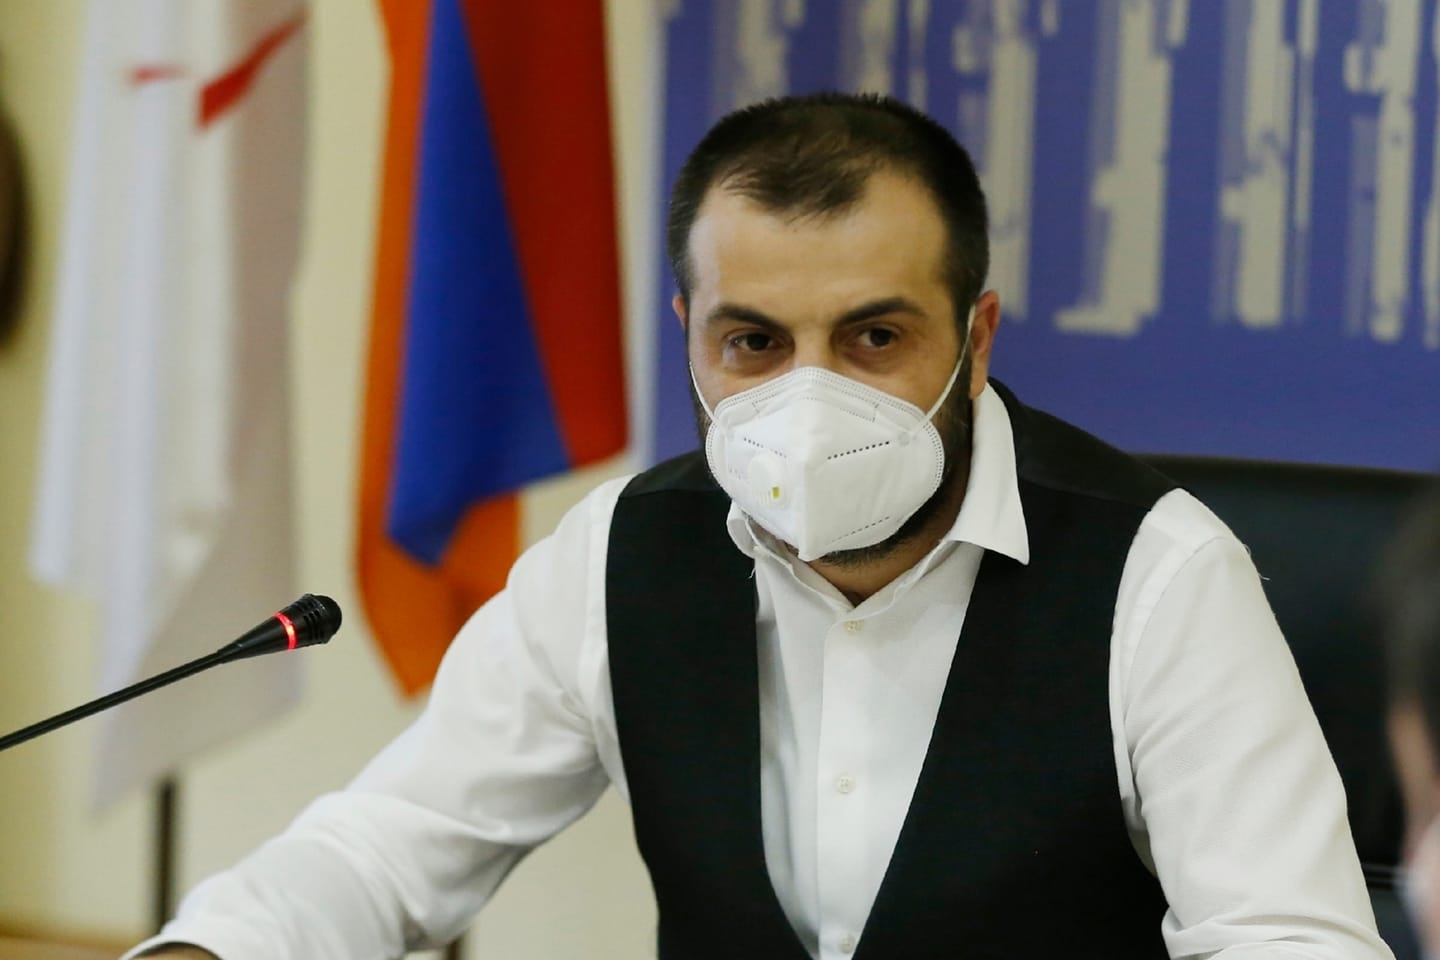 Заместитель мэра Еревана Тигран Вирабян написал заявление об уходе